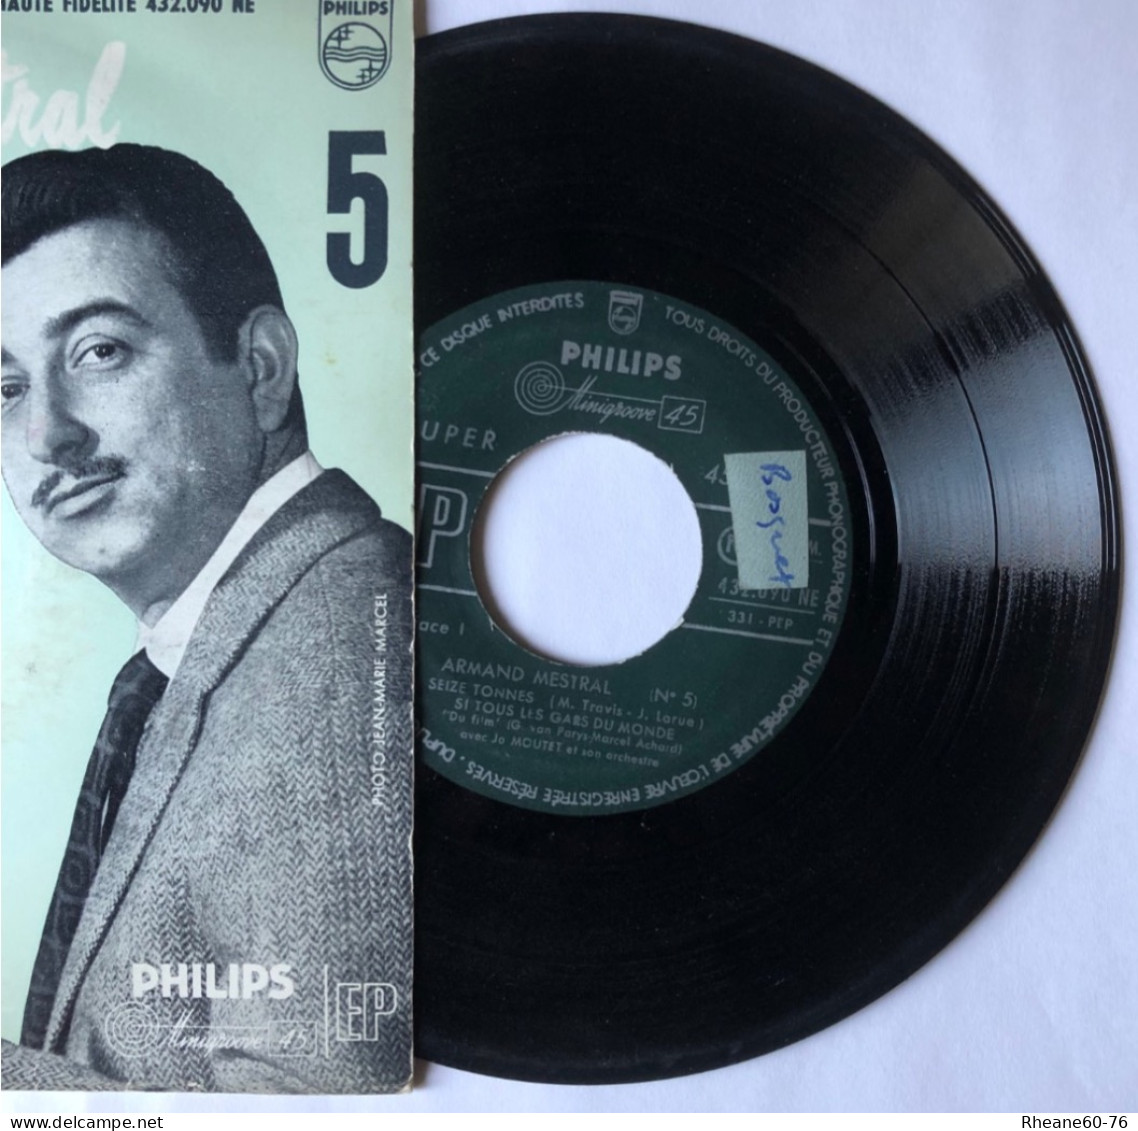 Philips 432.090 NE - 45T EP - Armand Mestral Avec Jo Moutet Et Son Orchestre - Microsillon Médium Haute Fidélité - Formati Speciali